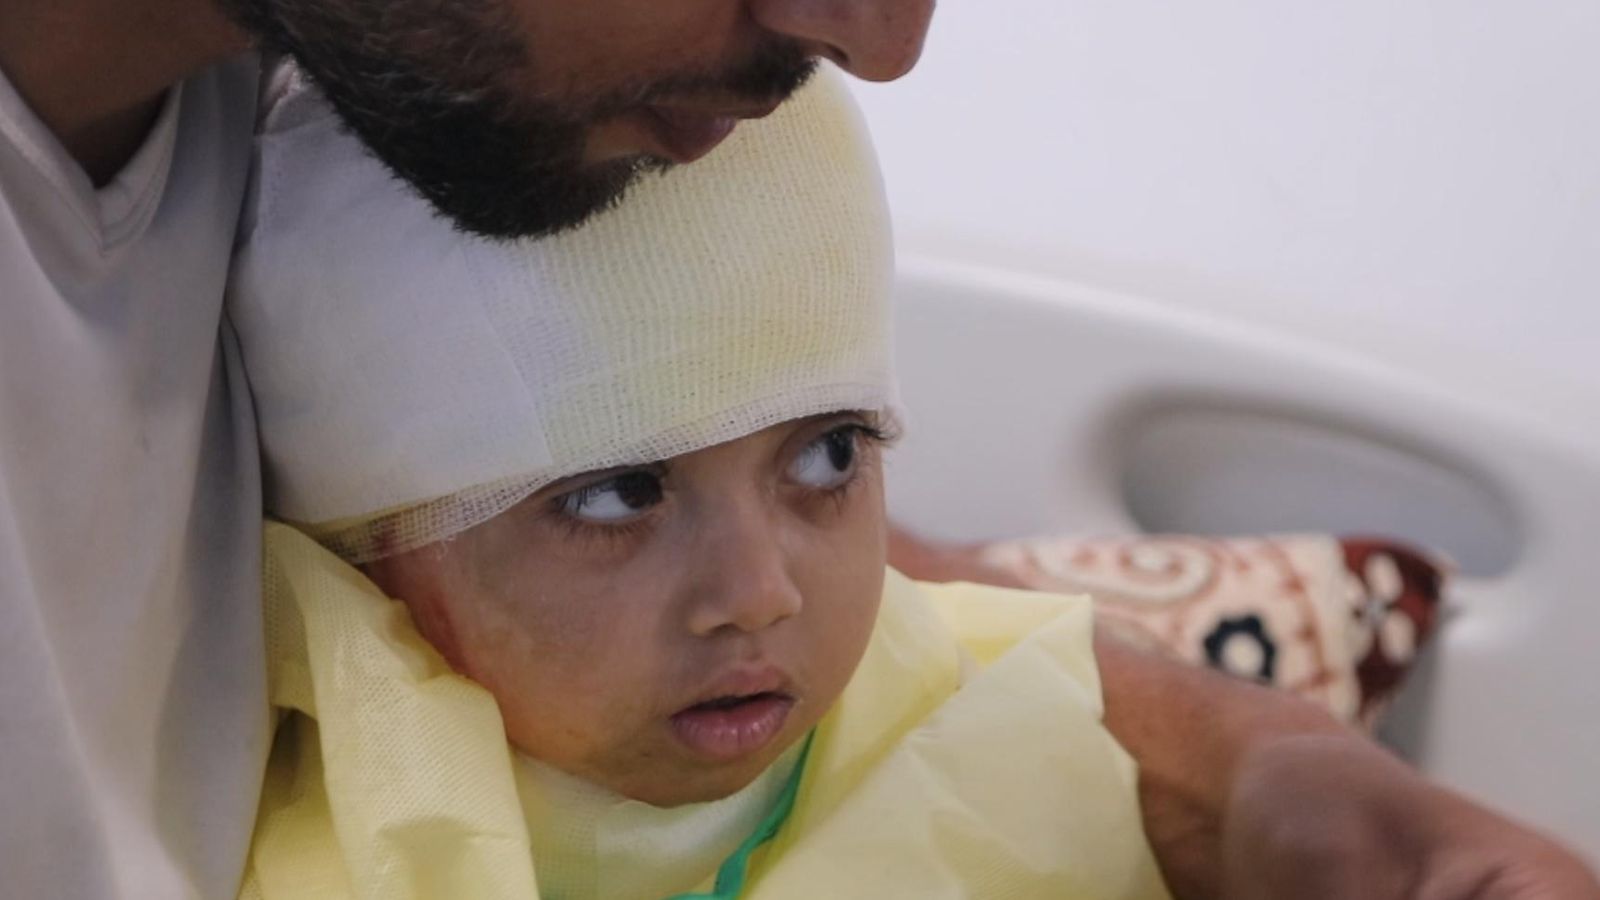 UK urged to admit 11 Gaza children hurt in the war for urgent treatment